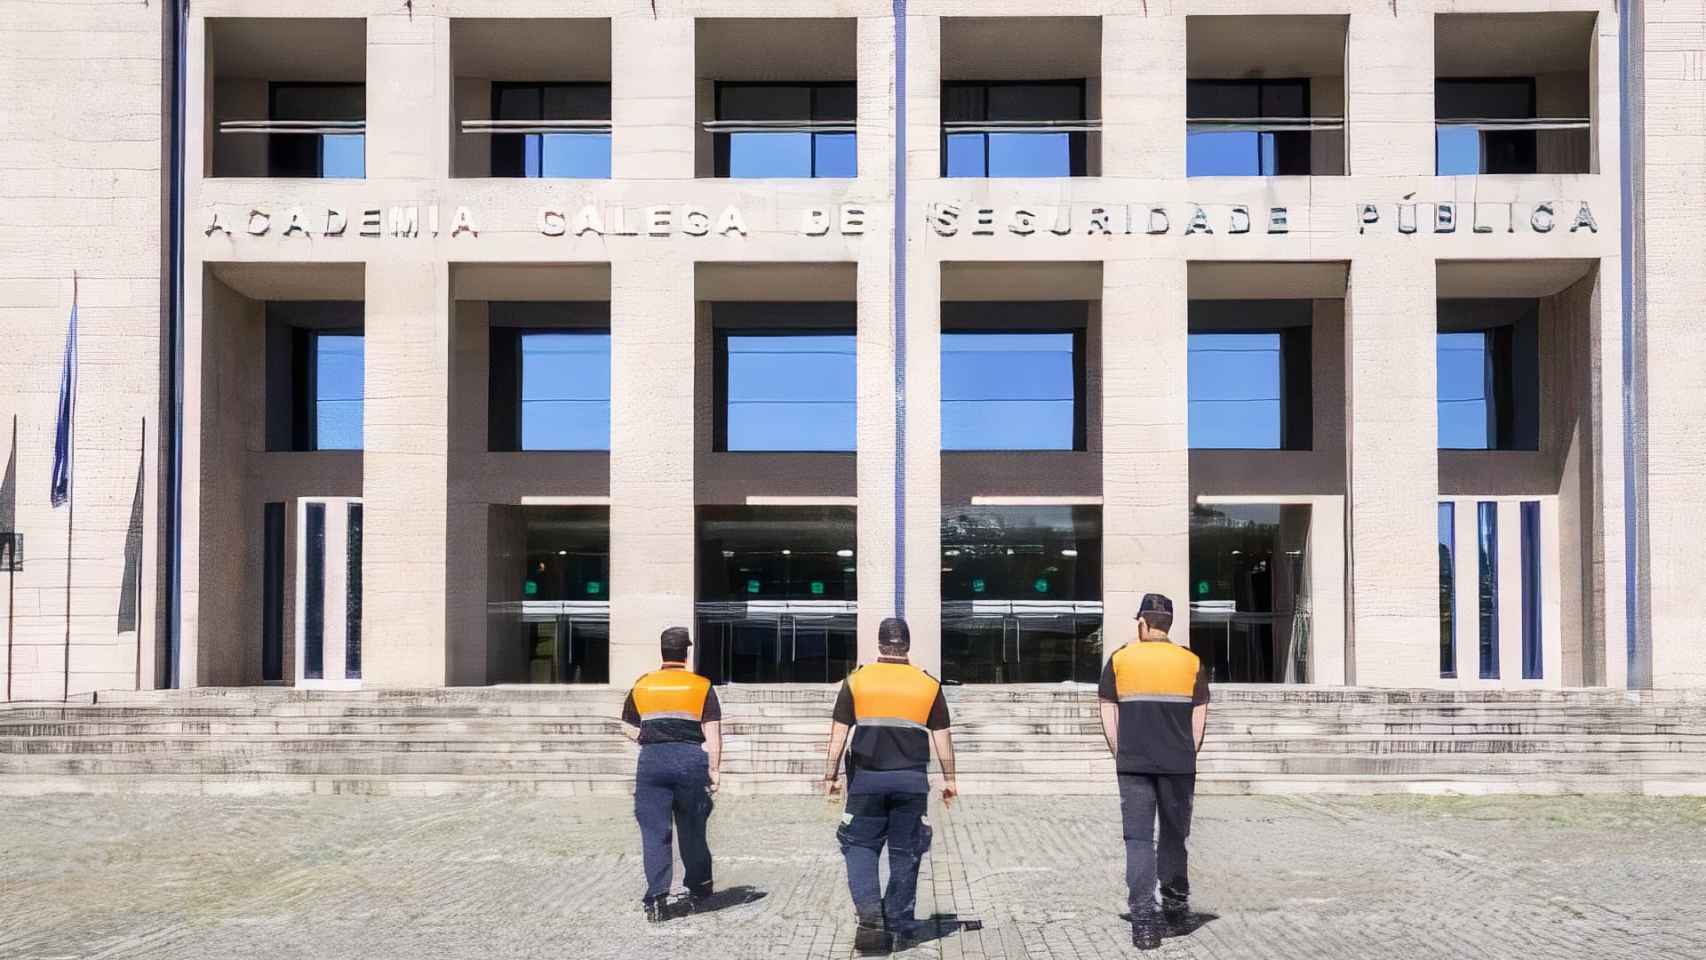 Fachada de la Academia Galega de Seguridade Pública (Agasp).